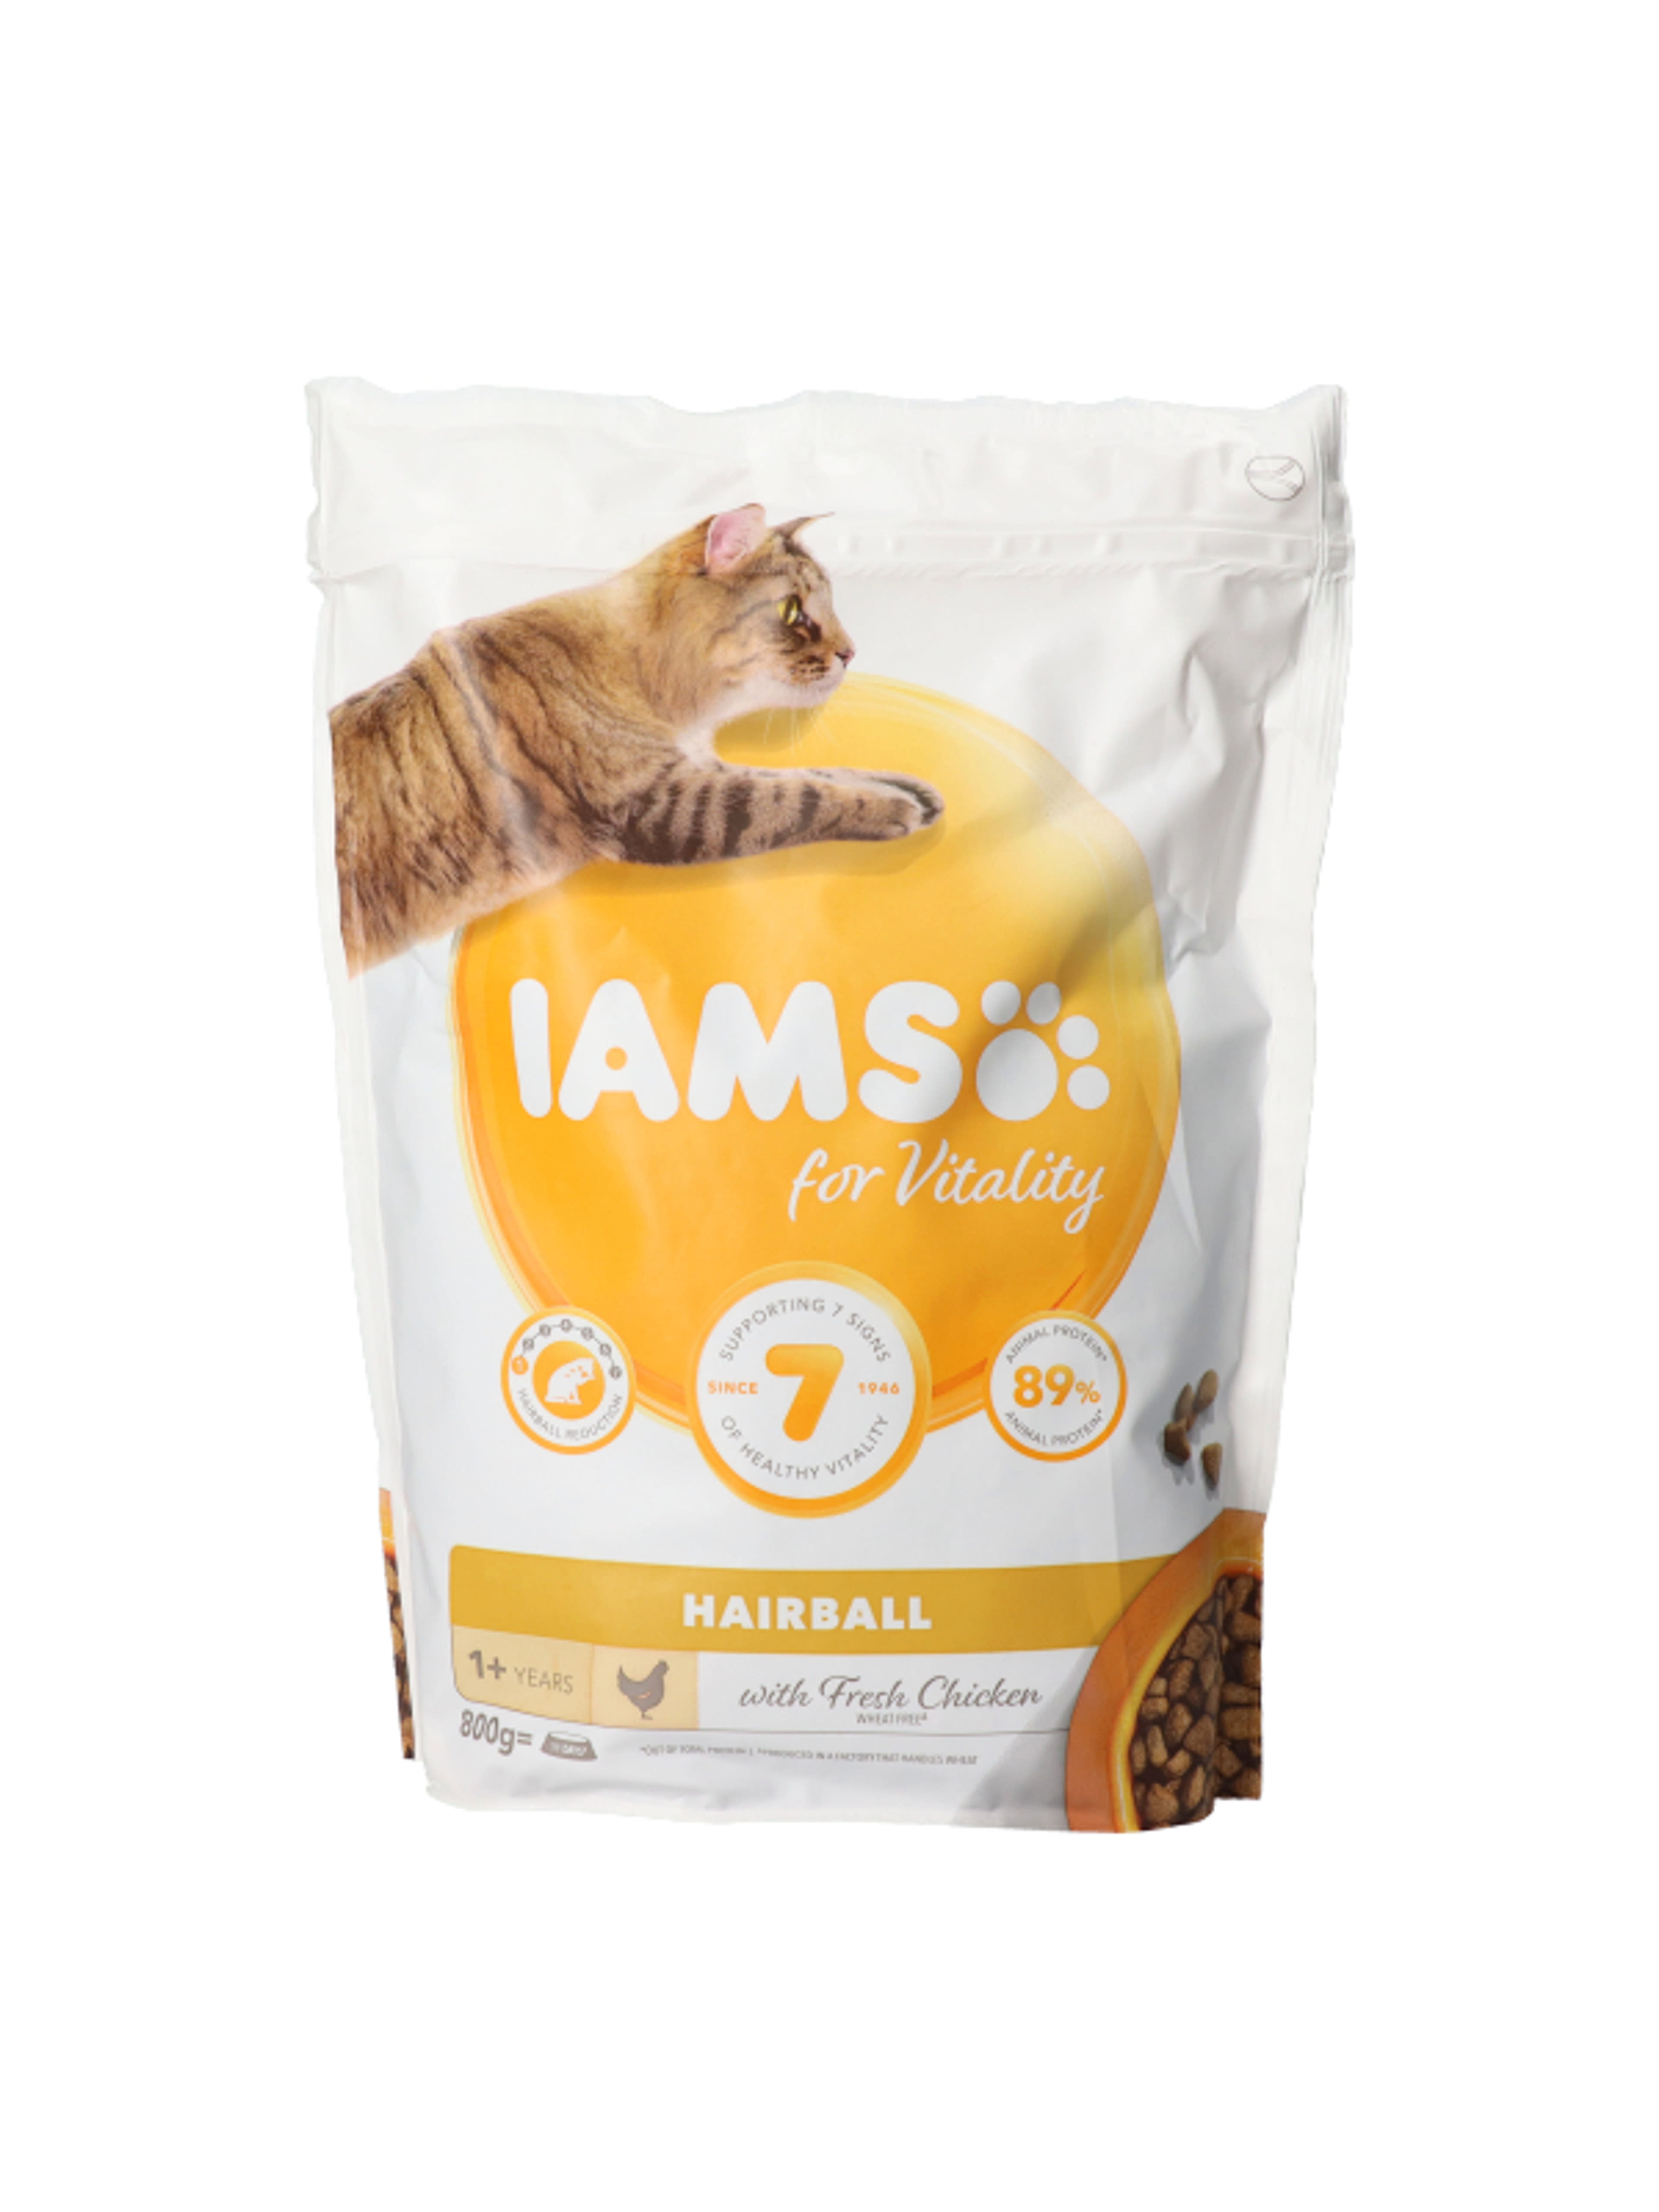 IAMS felmőtt száraz macskaeledel szőrabdaképződés megelőzéséért - 800 g